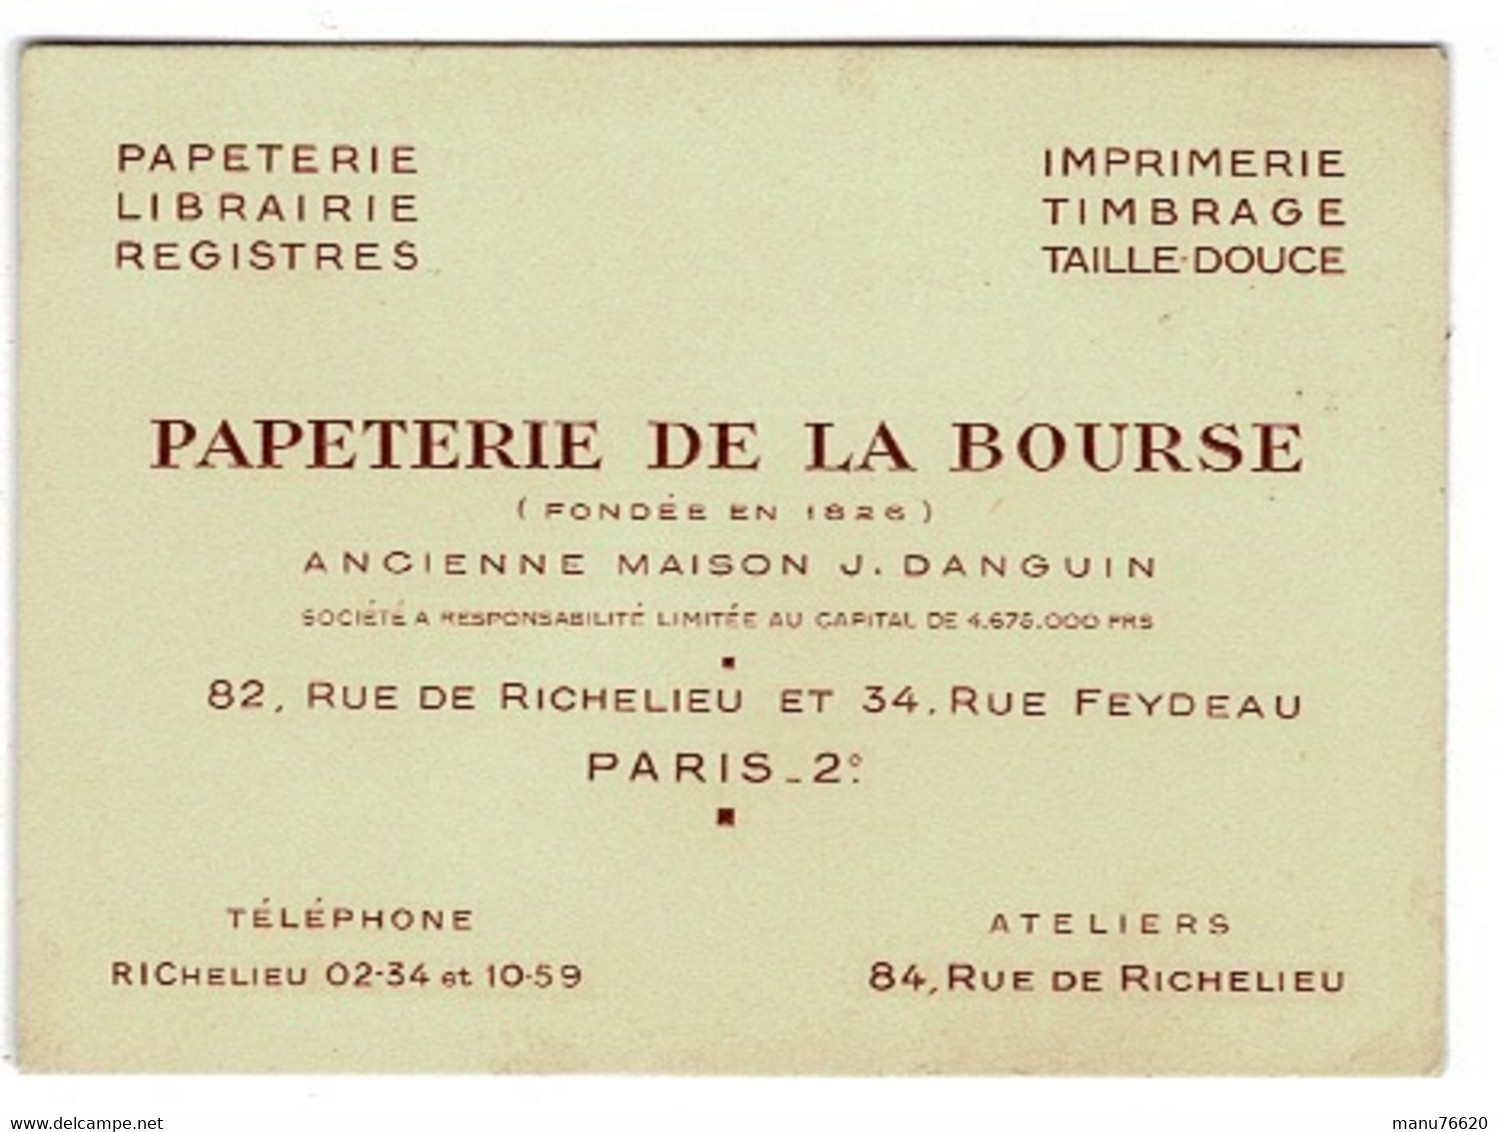 CARTE VSITE: Papeterie De La Bourse 82 Rue De Richelieu Et 34 Rue Feydeau - PARIS 2 ème . - Cartes De Visite